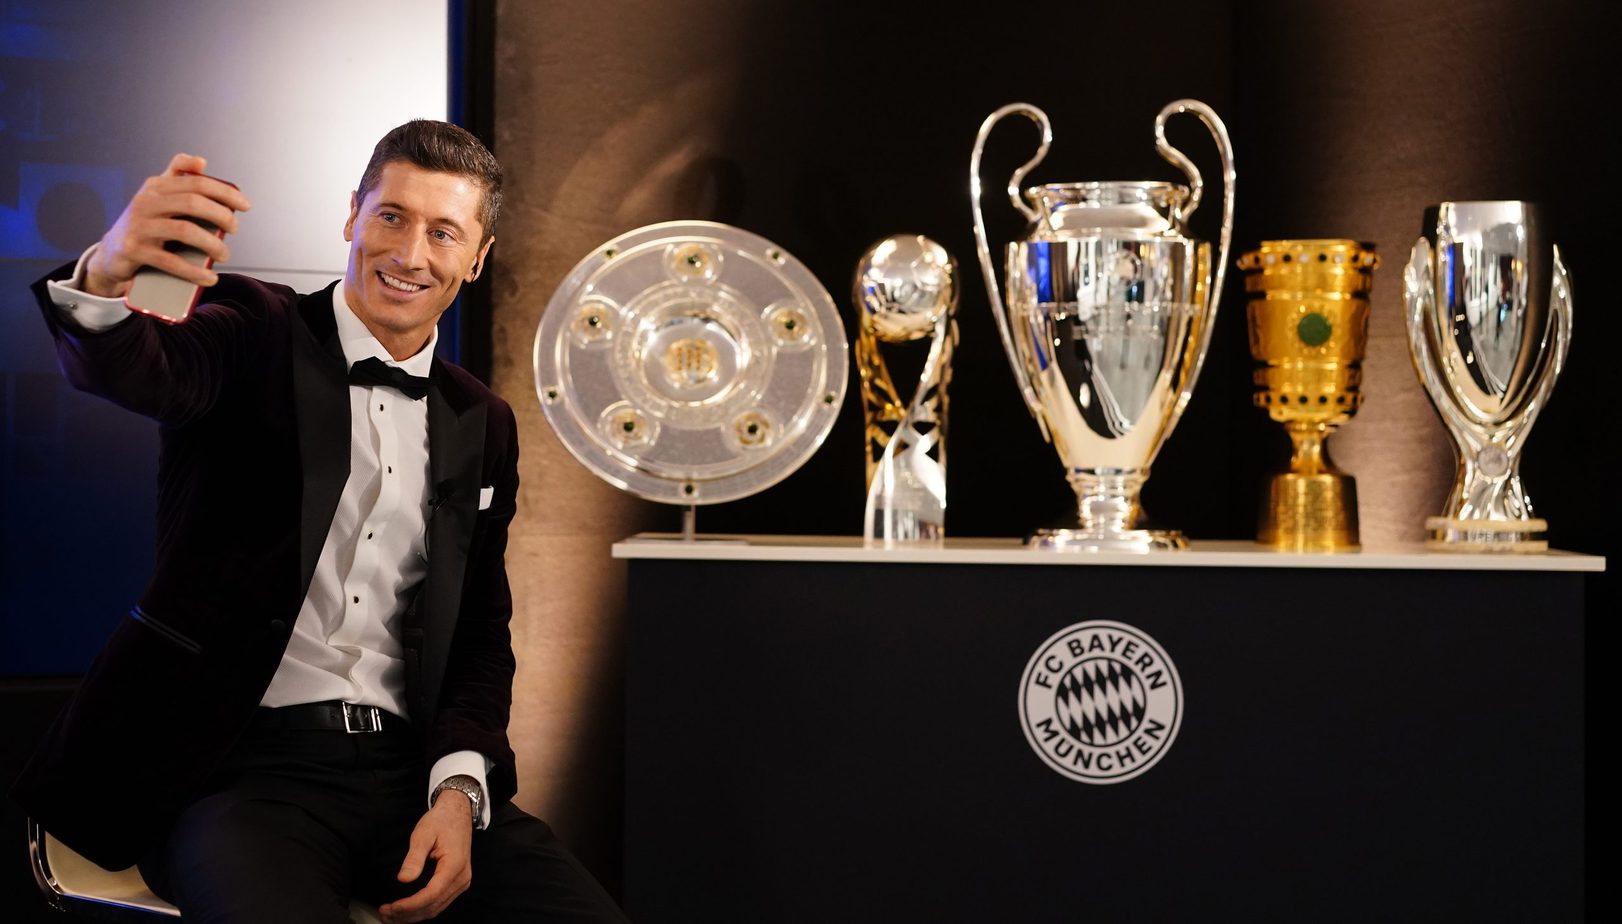 Robert Lewandowski triumfatorem plebiscytu na Najlepszego Sportowca Polski 2020. Nagrody specjalne dla PKN Orlen i Totalizatora Sportowego